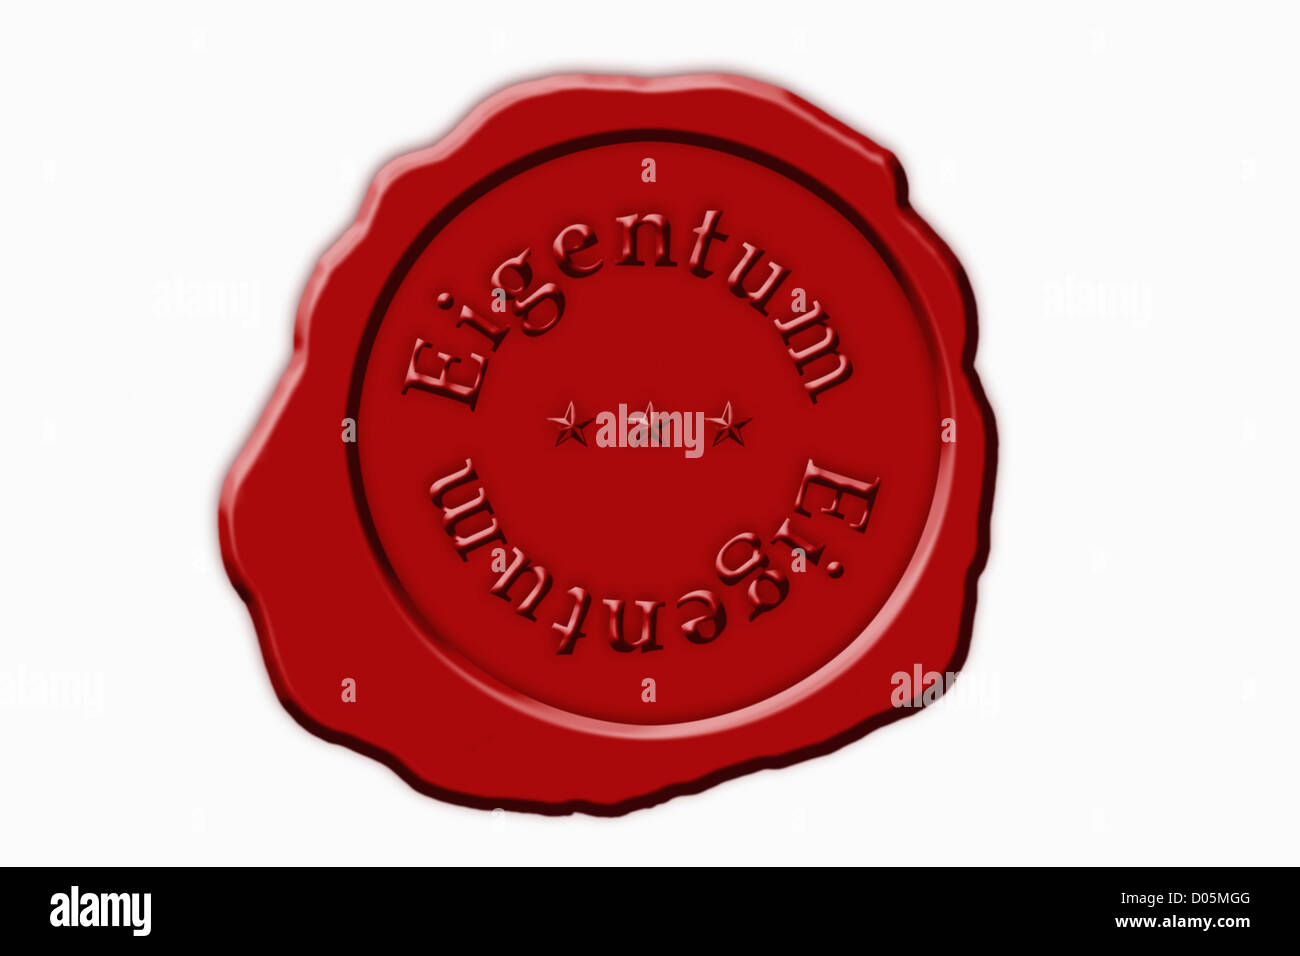 Detailansicht eines roten Siegels mit der Aufschrift Eigentum | Dettaglio foto di un sigillo rosso con la scritta in tedesco station wagon Foto Stock